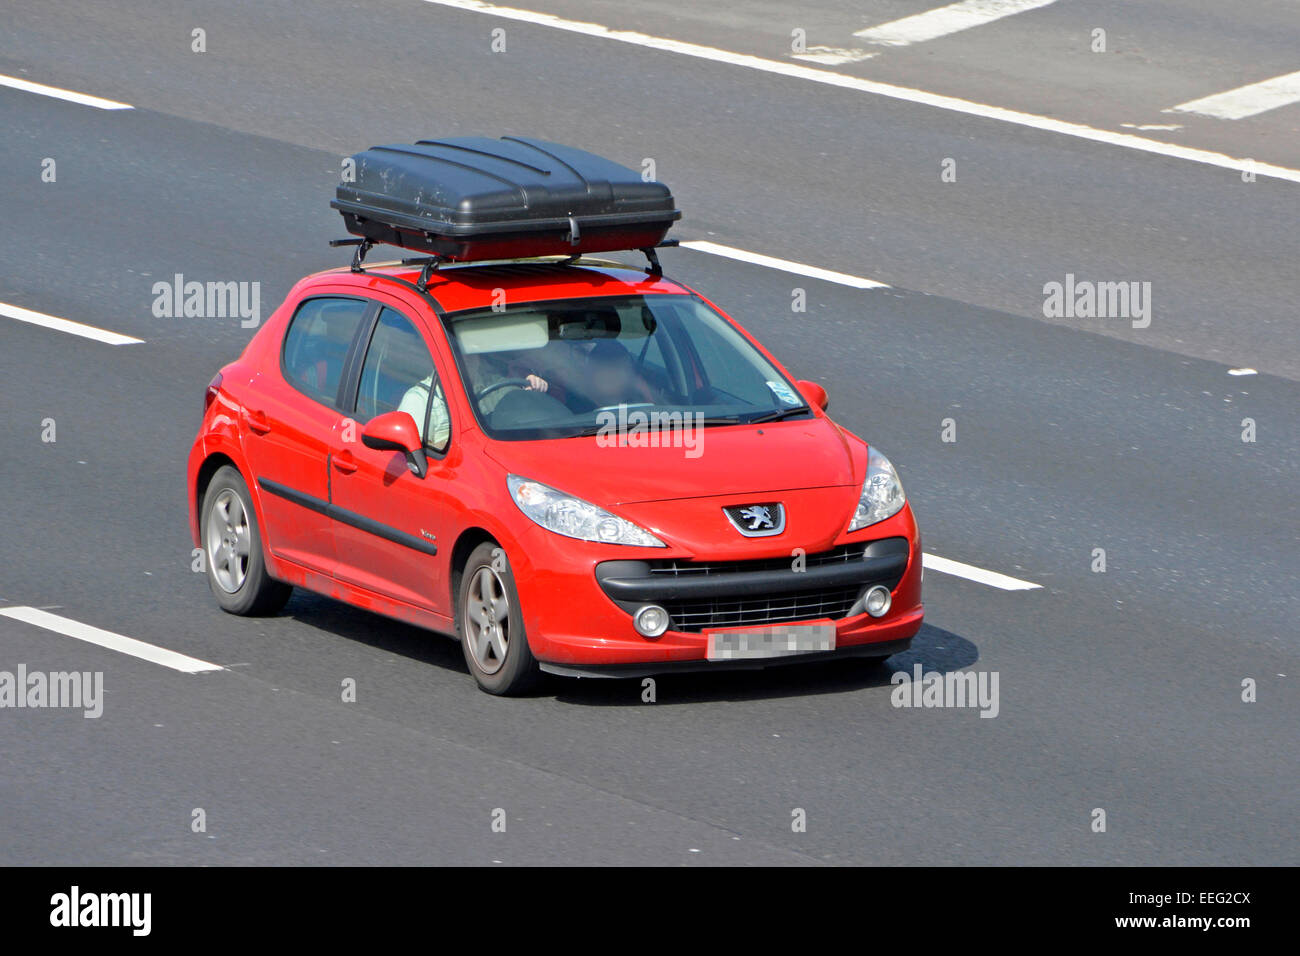 Conducteur de voiture Vauxhall rouge avec vue latérale avant, équipé d'un grand coffre à bagages de toit noir, longeant l'autoroute M25 Essex Angleterre Royaume-Uni Banque D'Images